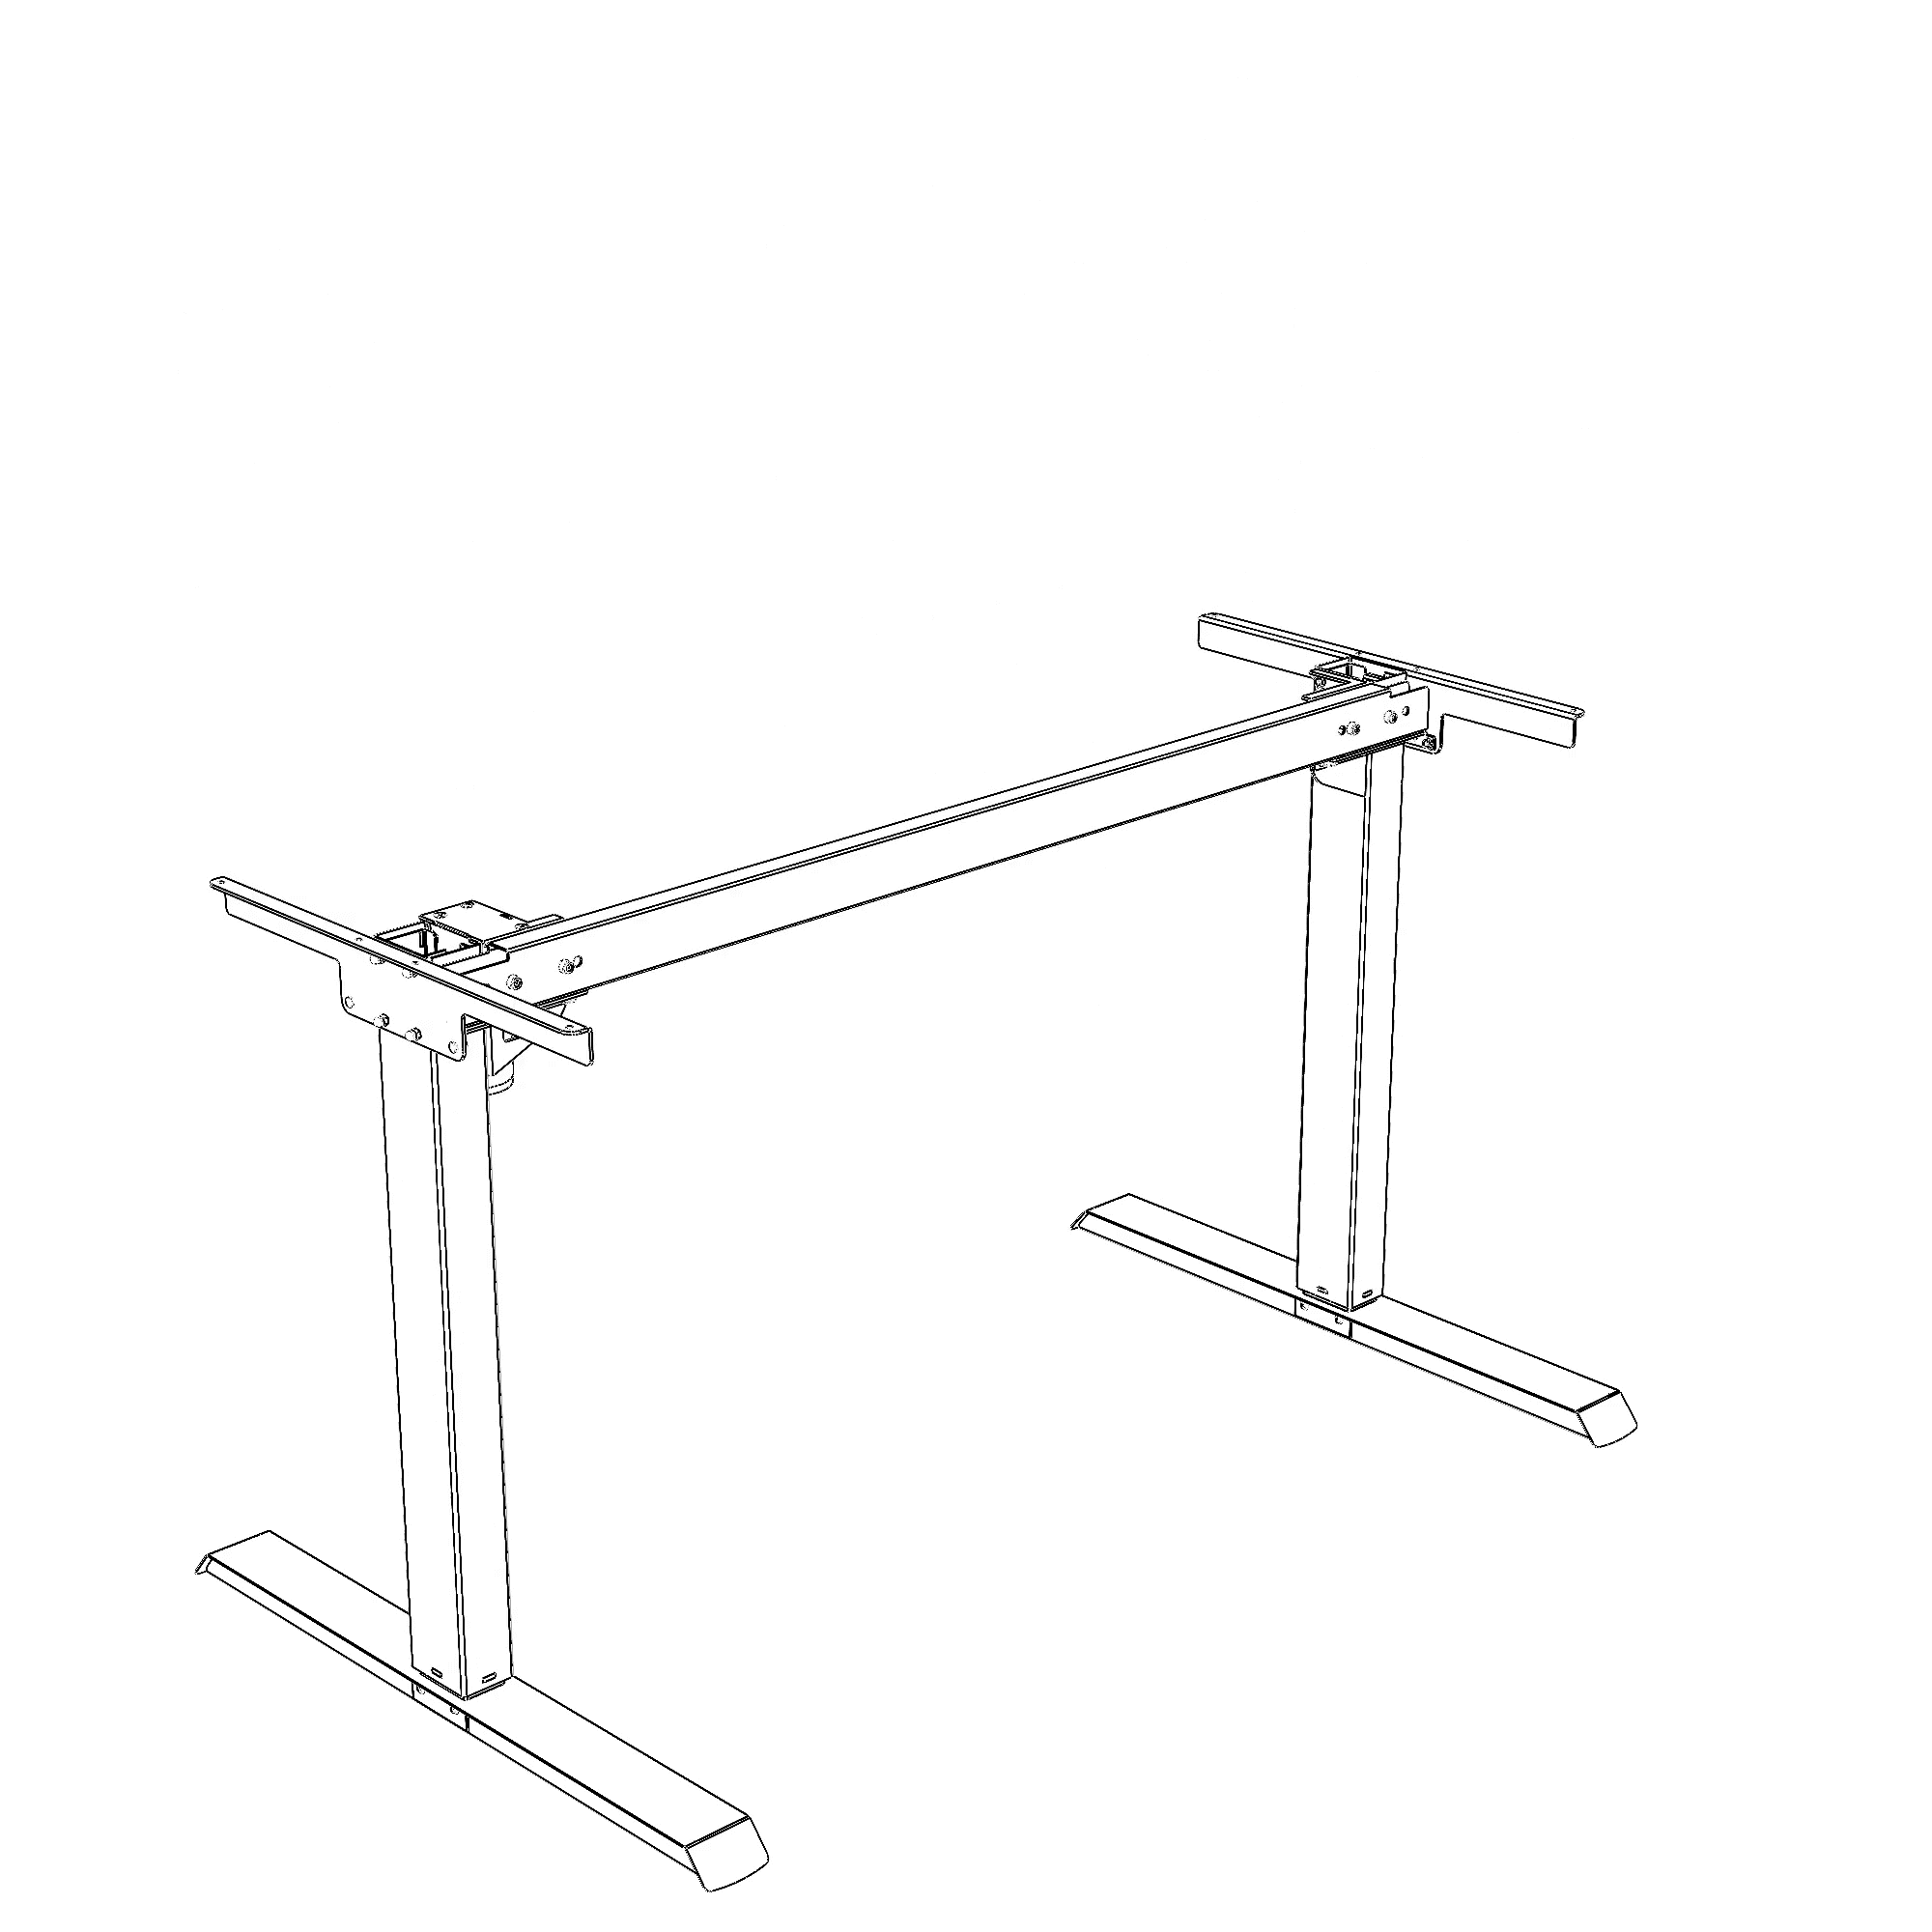 Electric Desk Frame | Width 112 cm | Black 